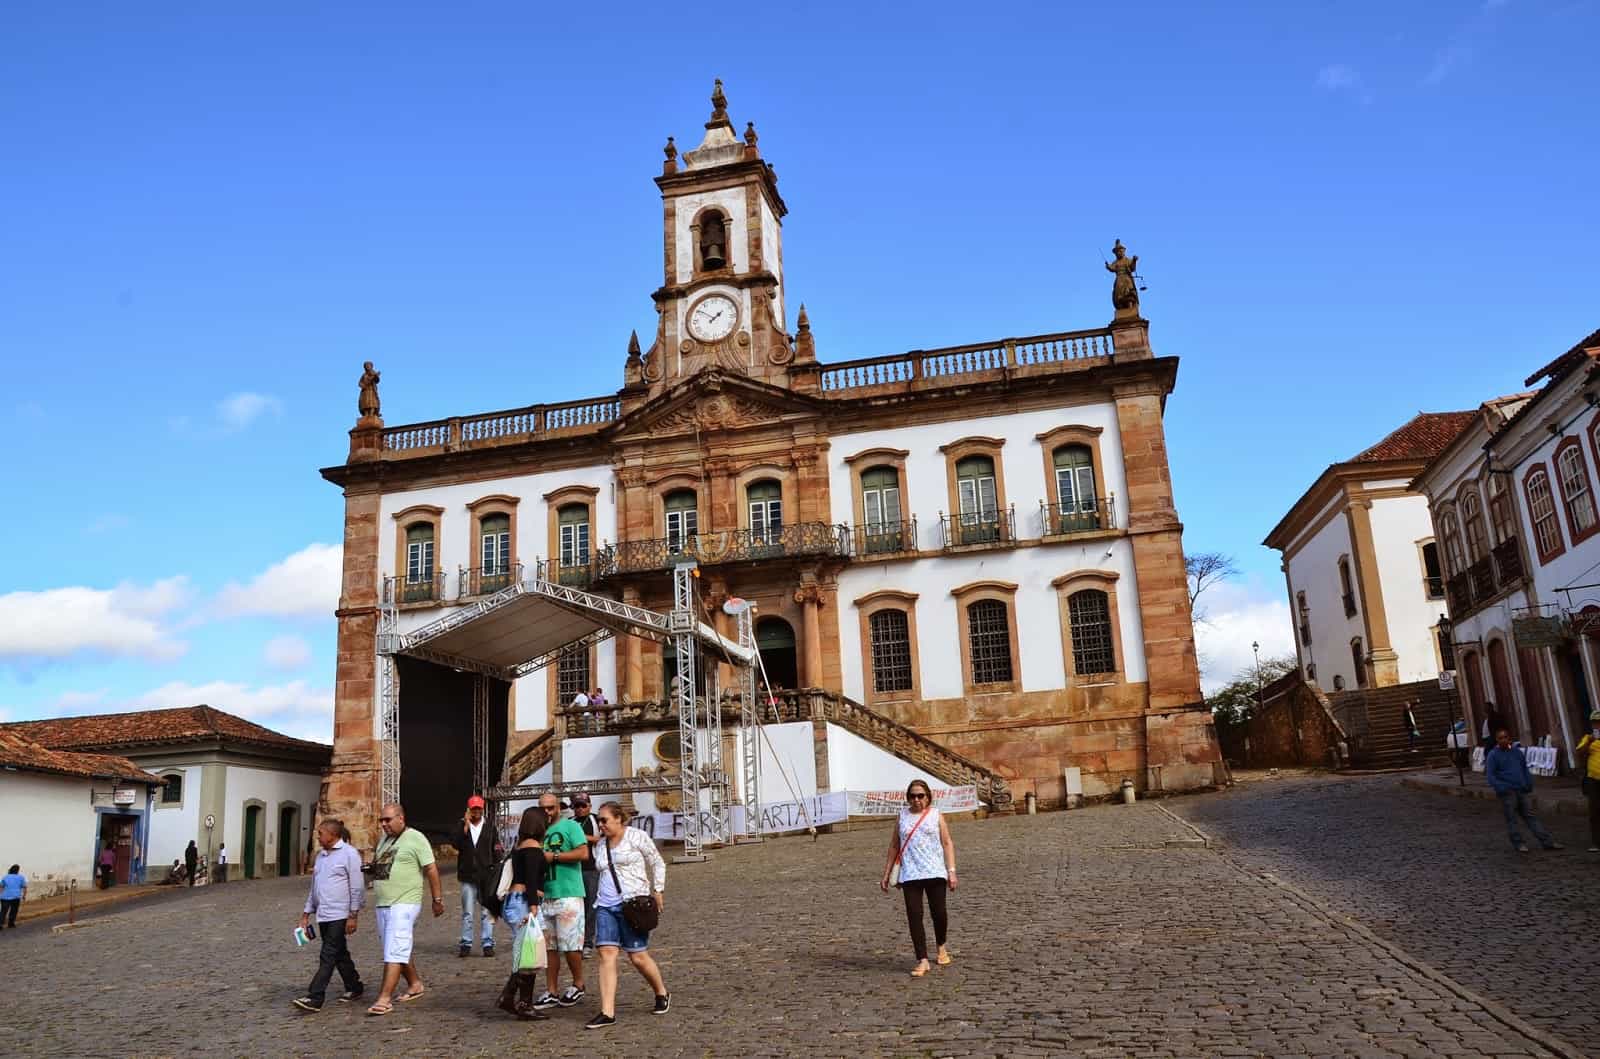 Museu da Inconfidência in Ouro Preto, Brazil